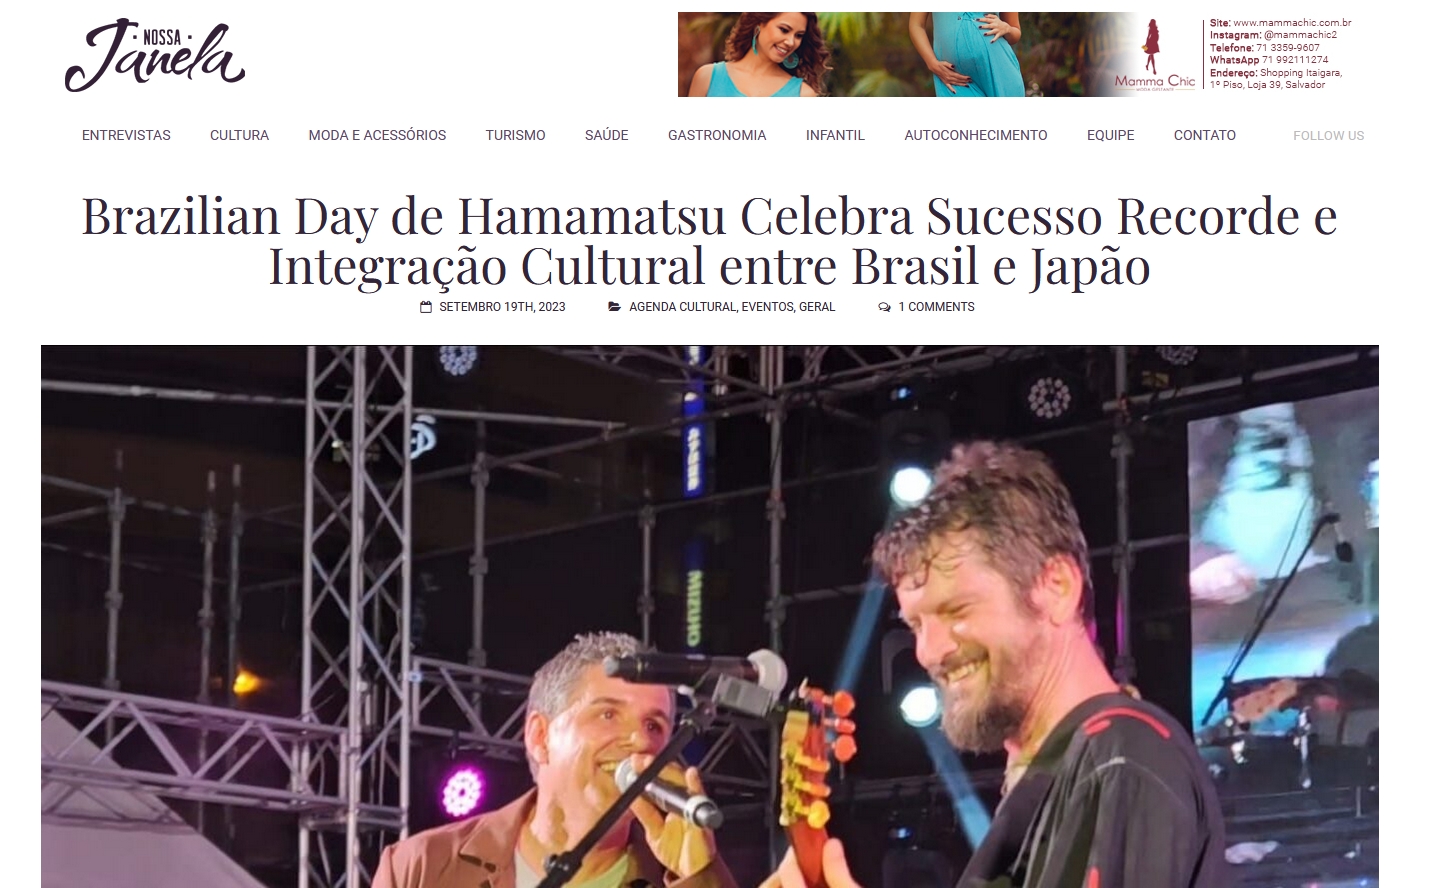 Brazilian Day de Hamamatsu Celebra Sucesso Recorde e Integração Cultural entre Brasil e Japão